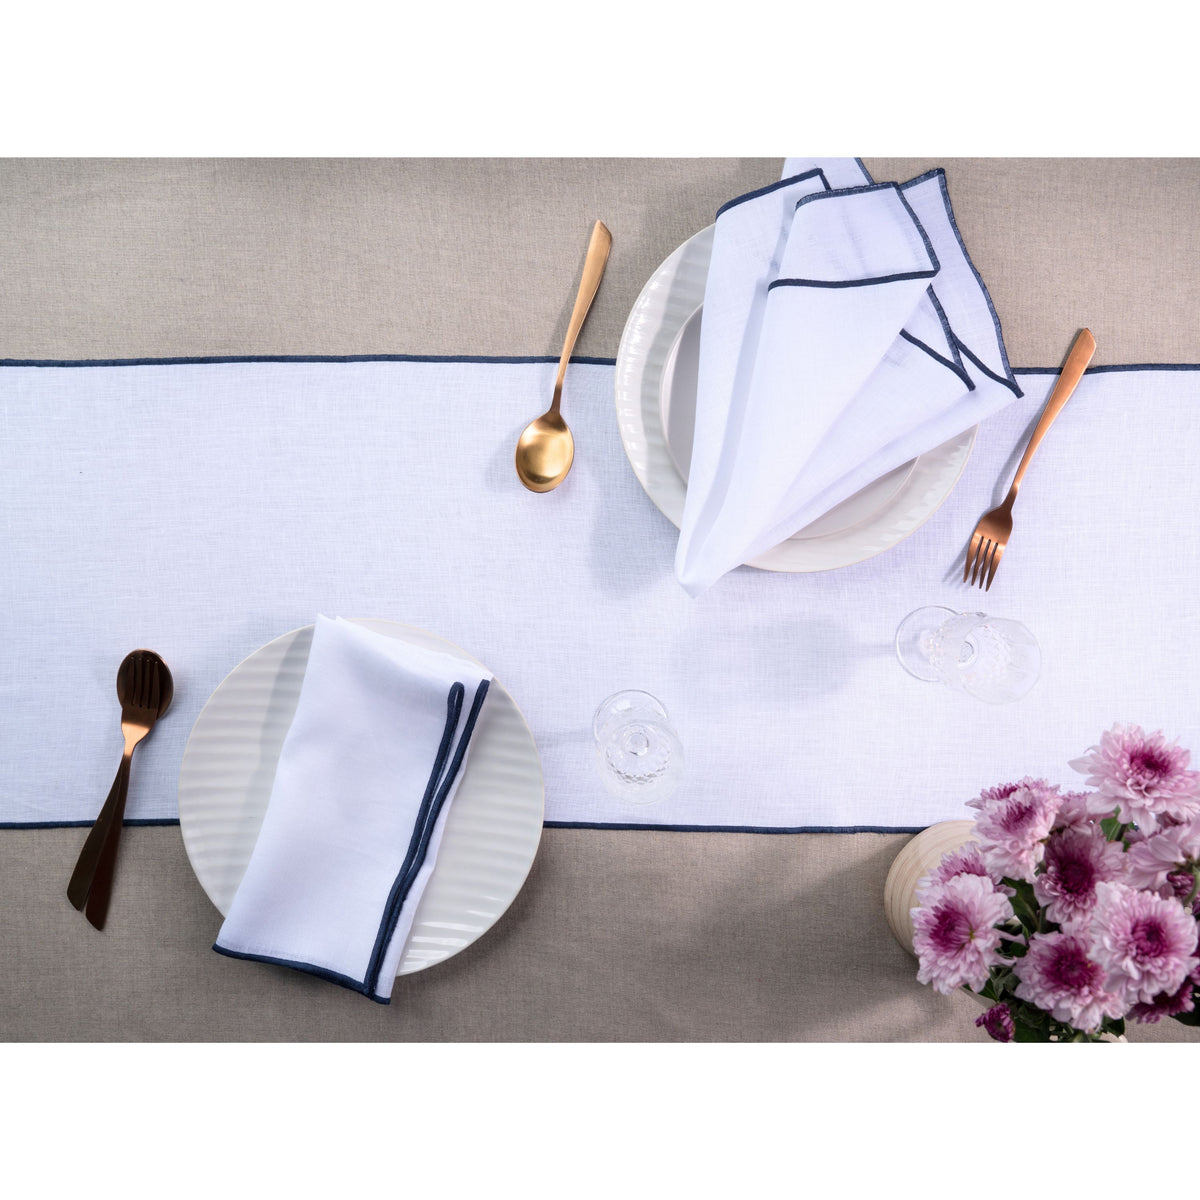 White & Navy Blue Linen Table Runner - Marrow Edge